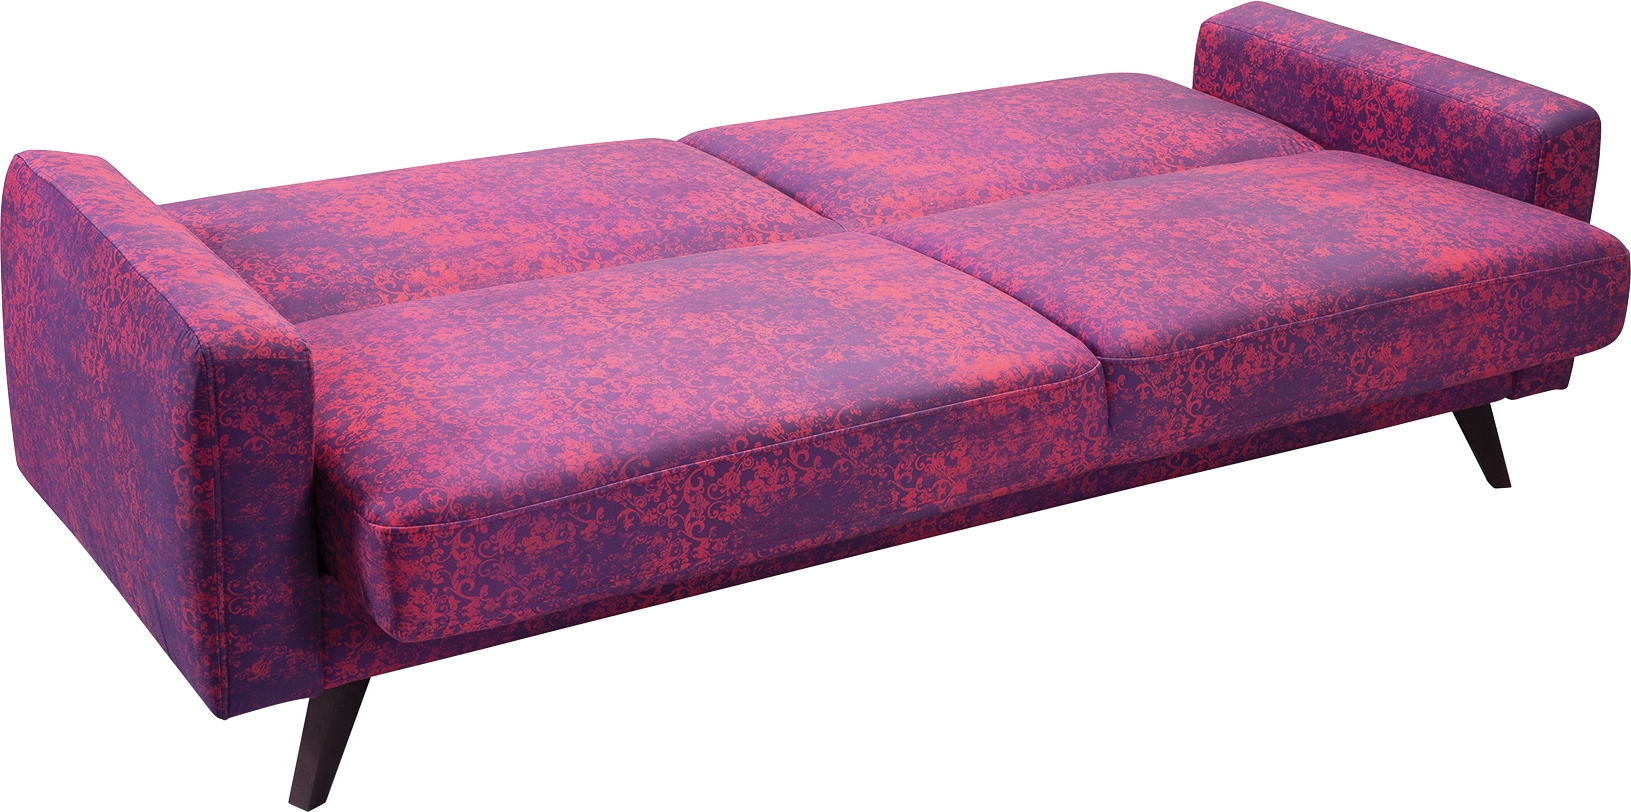 exxpo - sofa fashion 3-Sitzer, mit Schlaffunktion, Bettkasten und Holzfüsse